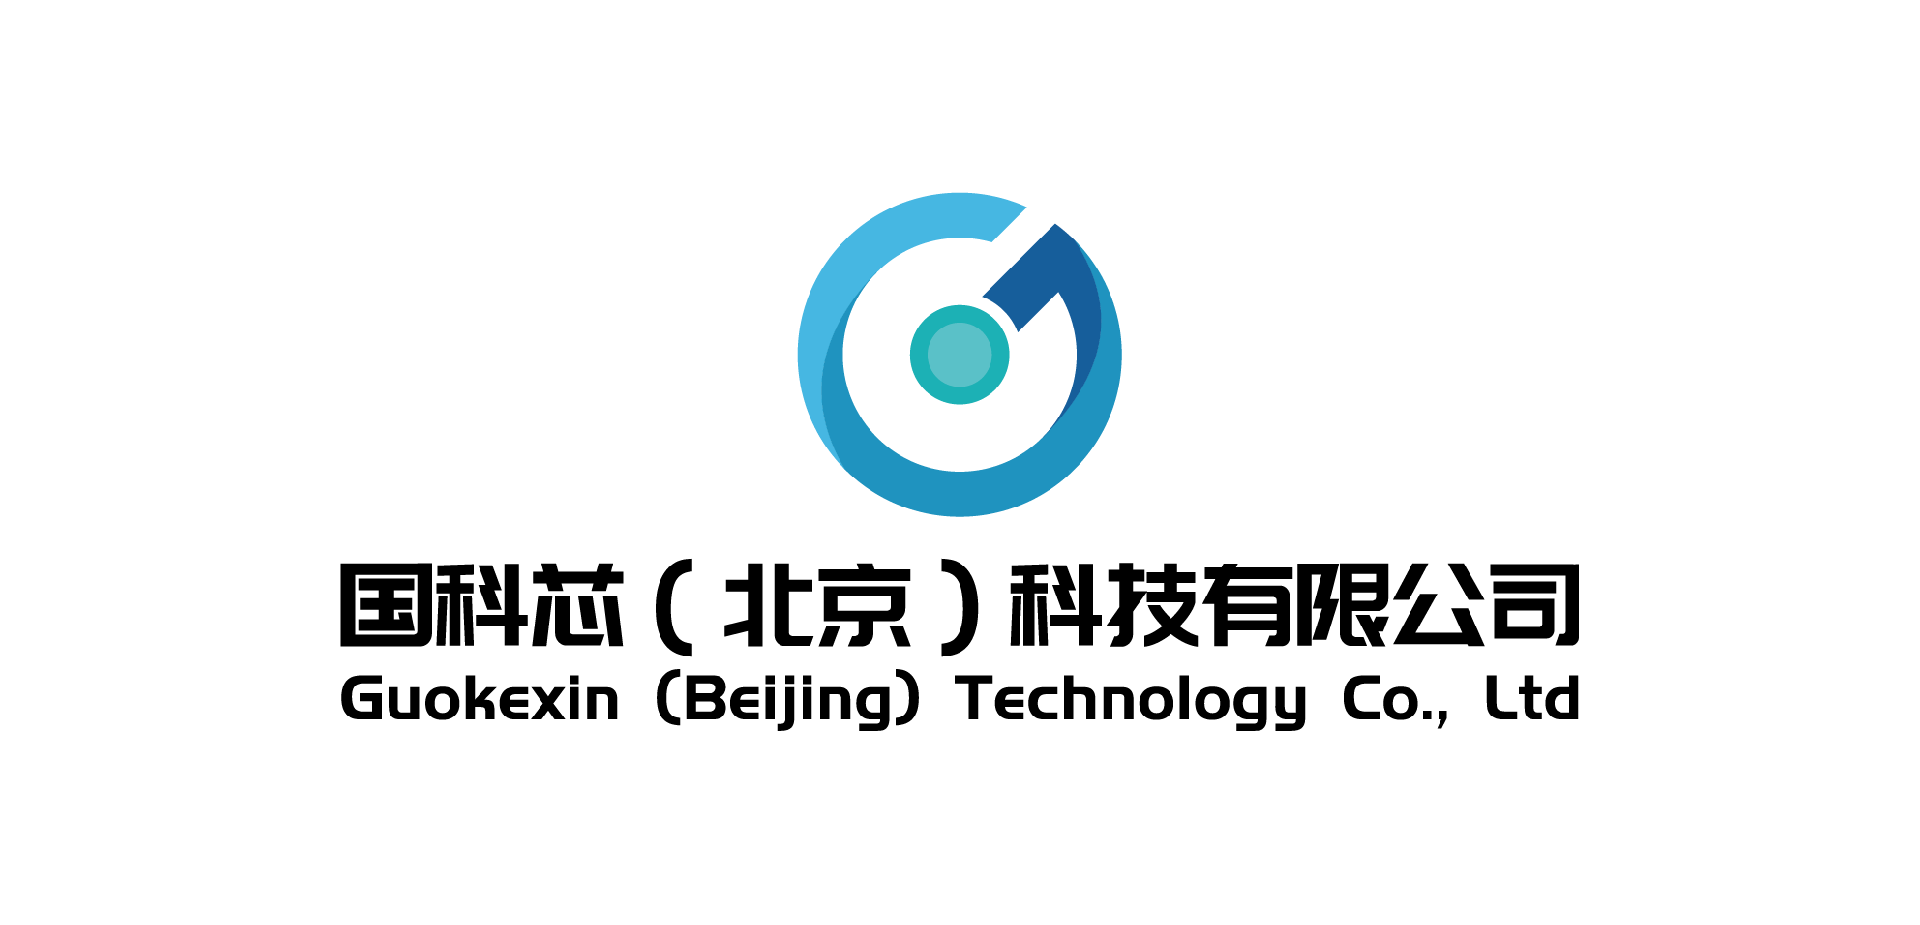 团体活动辅导箱室内版-团体活动设备-心理设备厂家——国科芯（北京）科技有限公司-国科芯